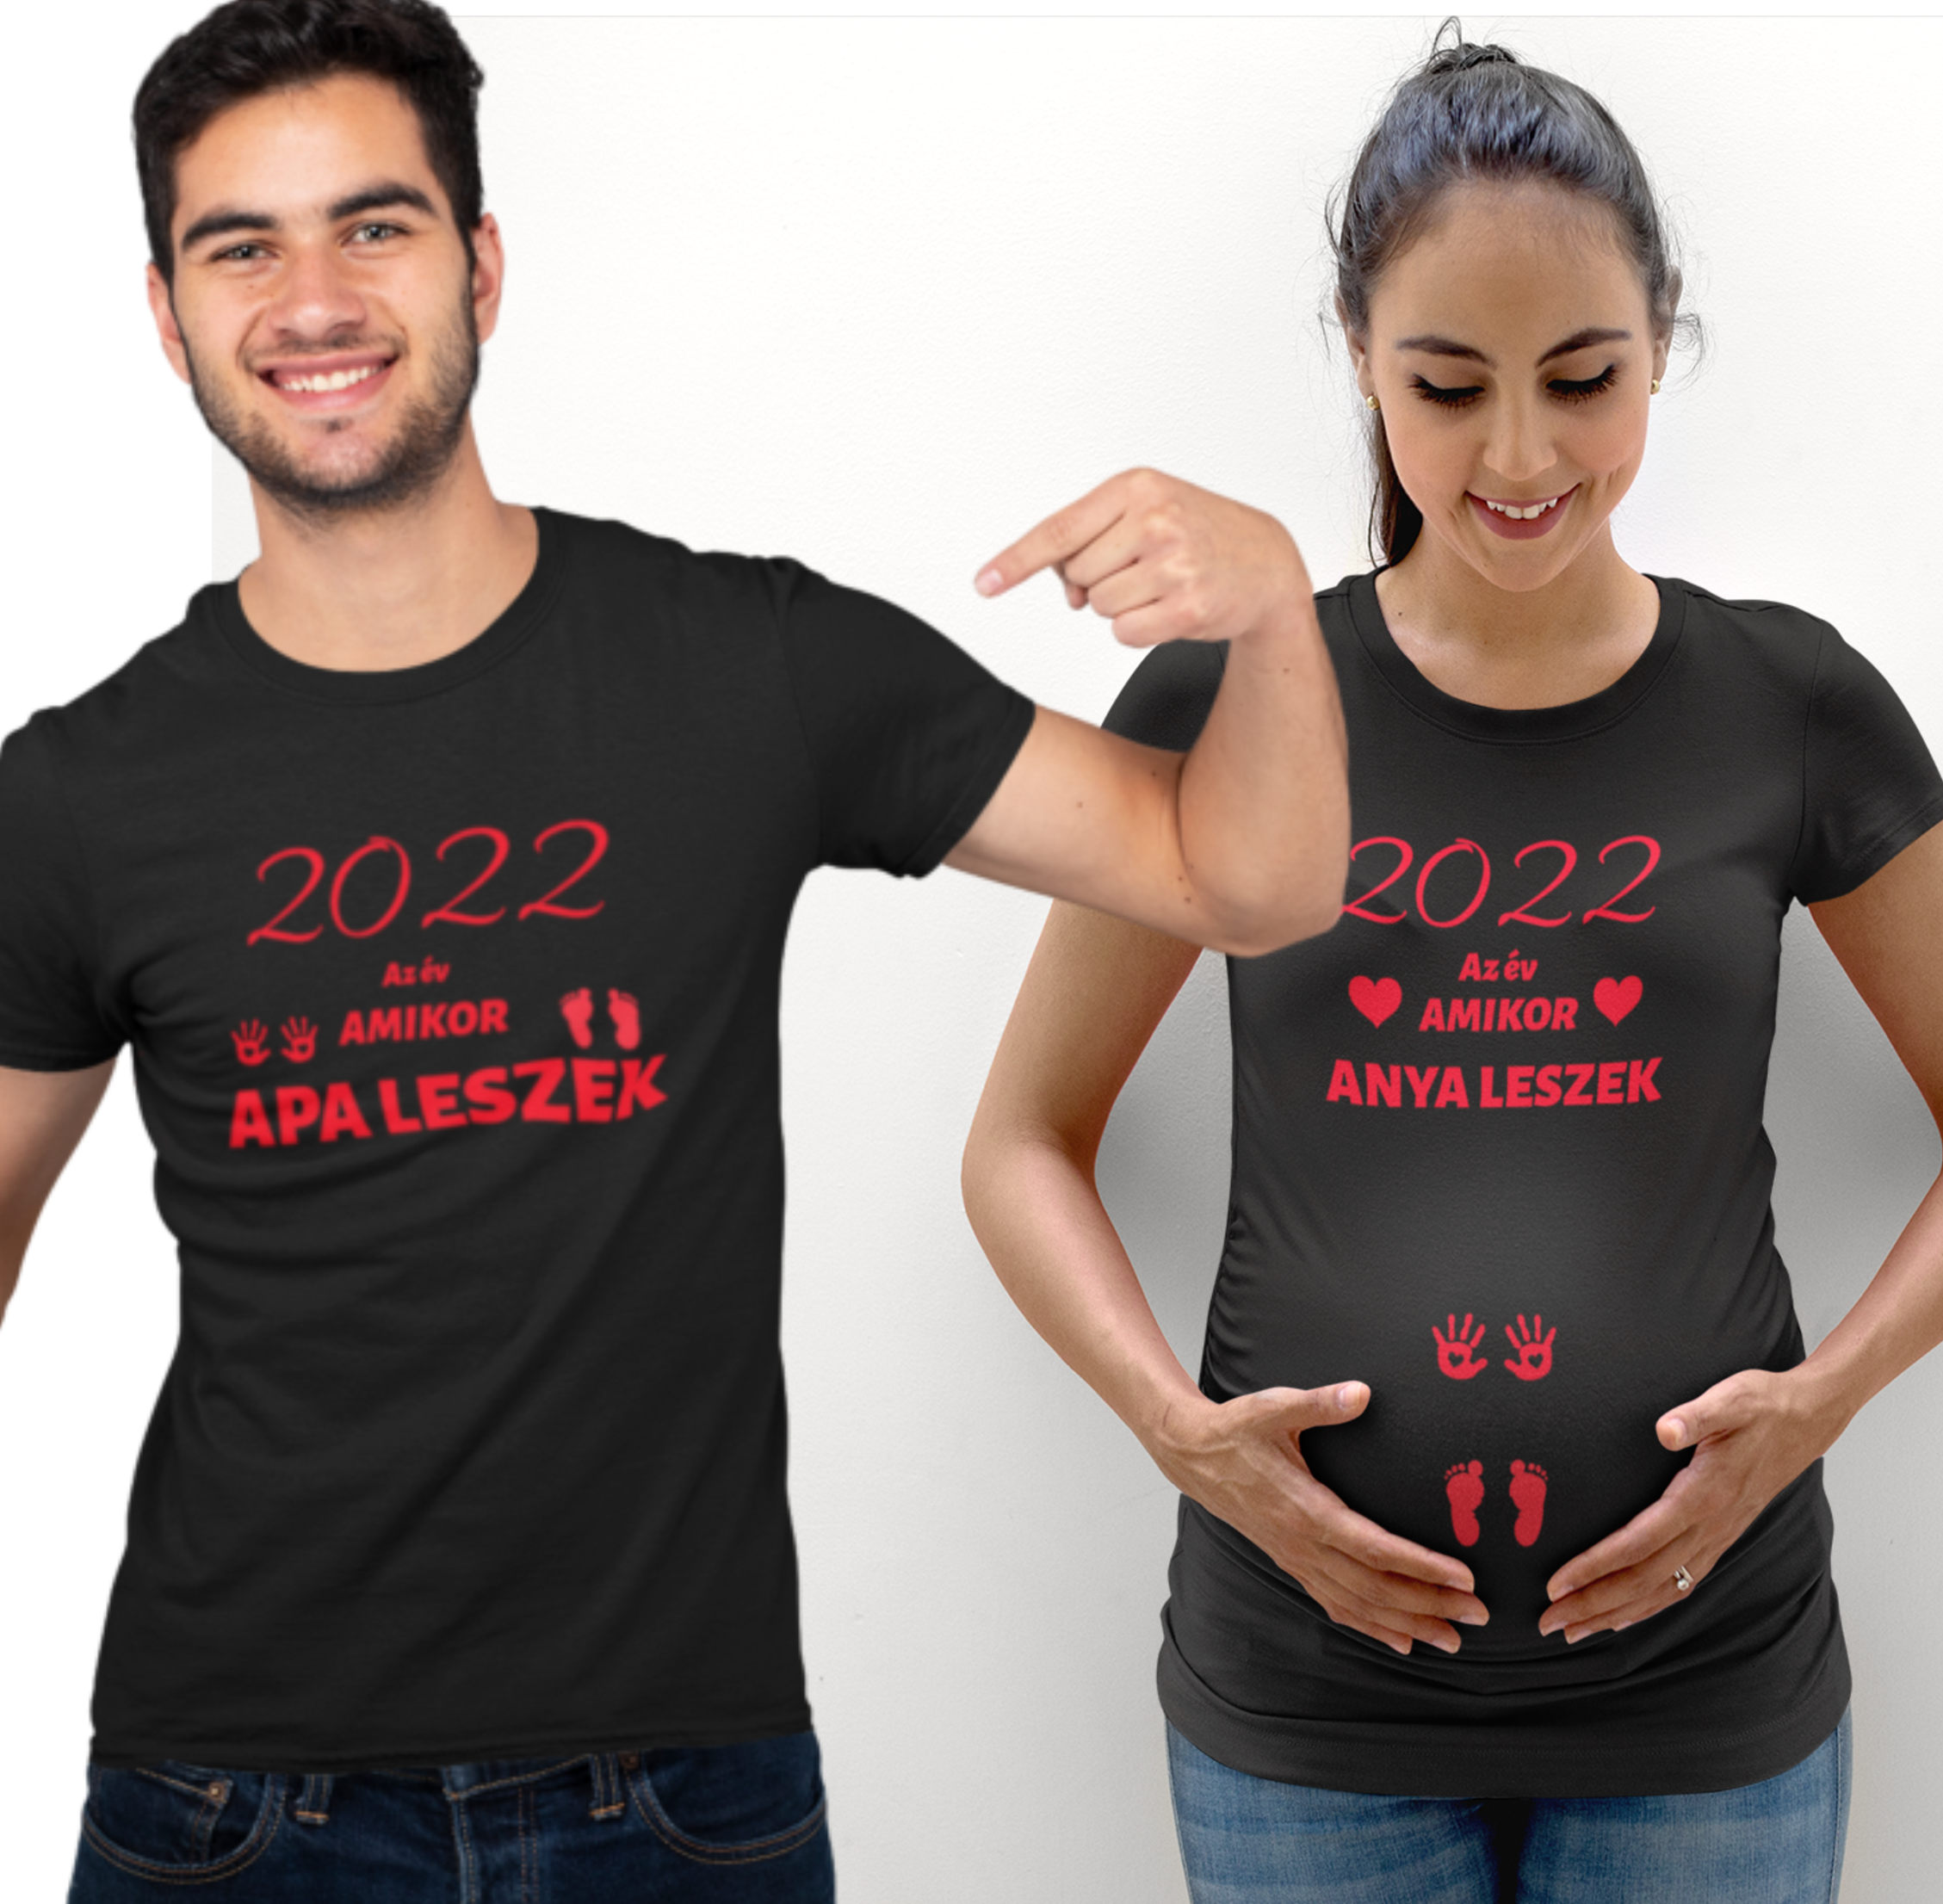 2022 az év amikor anya leszek/ 2022 az év amikor apa leszek---(2 db póló)